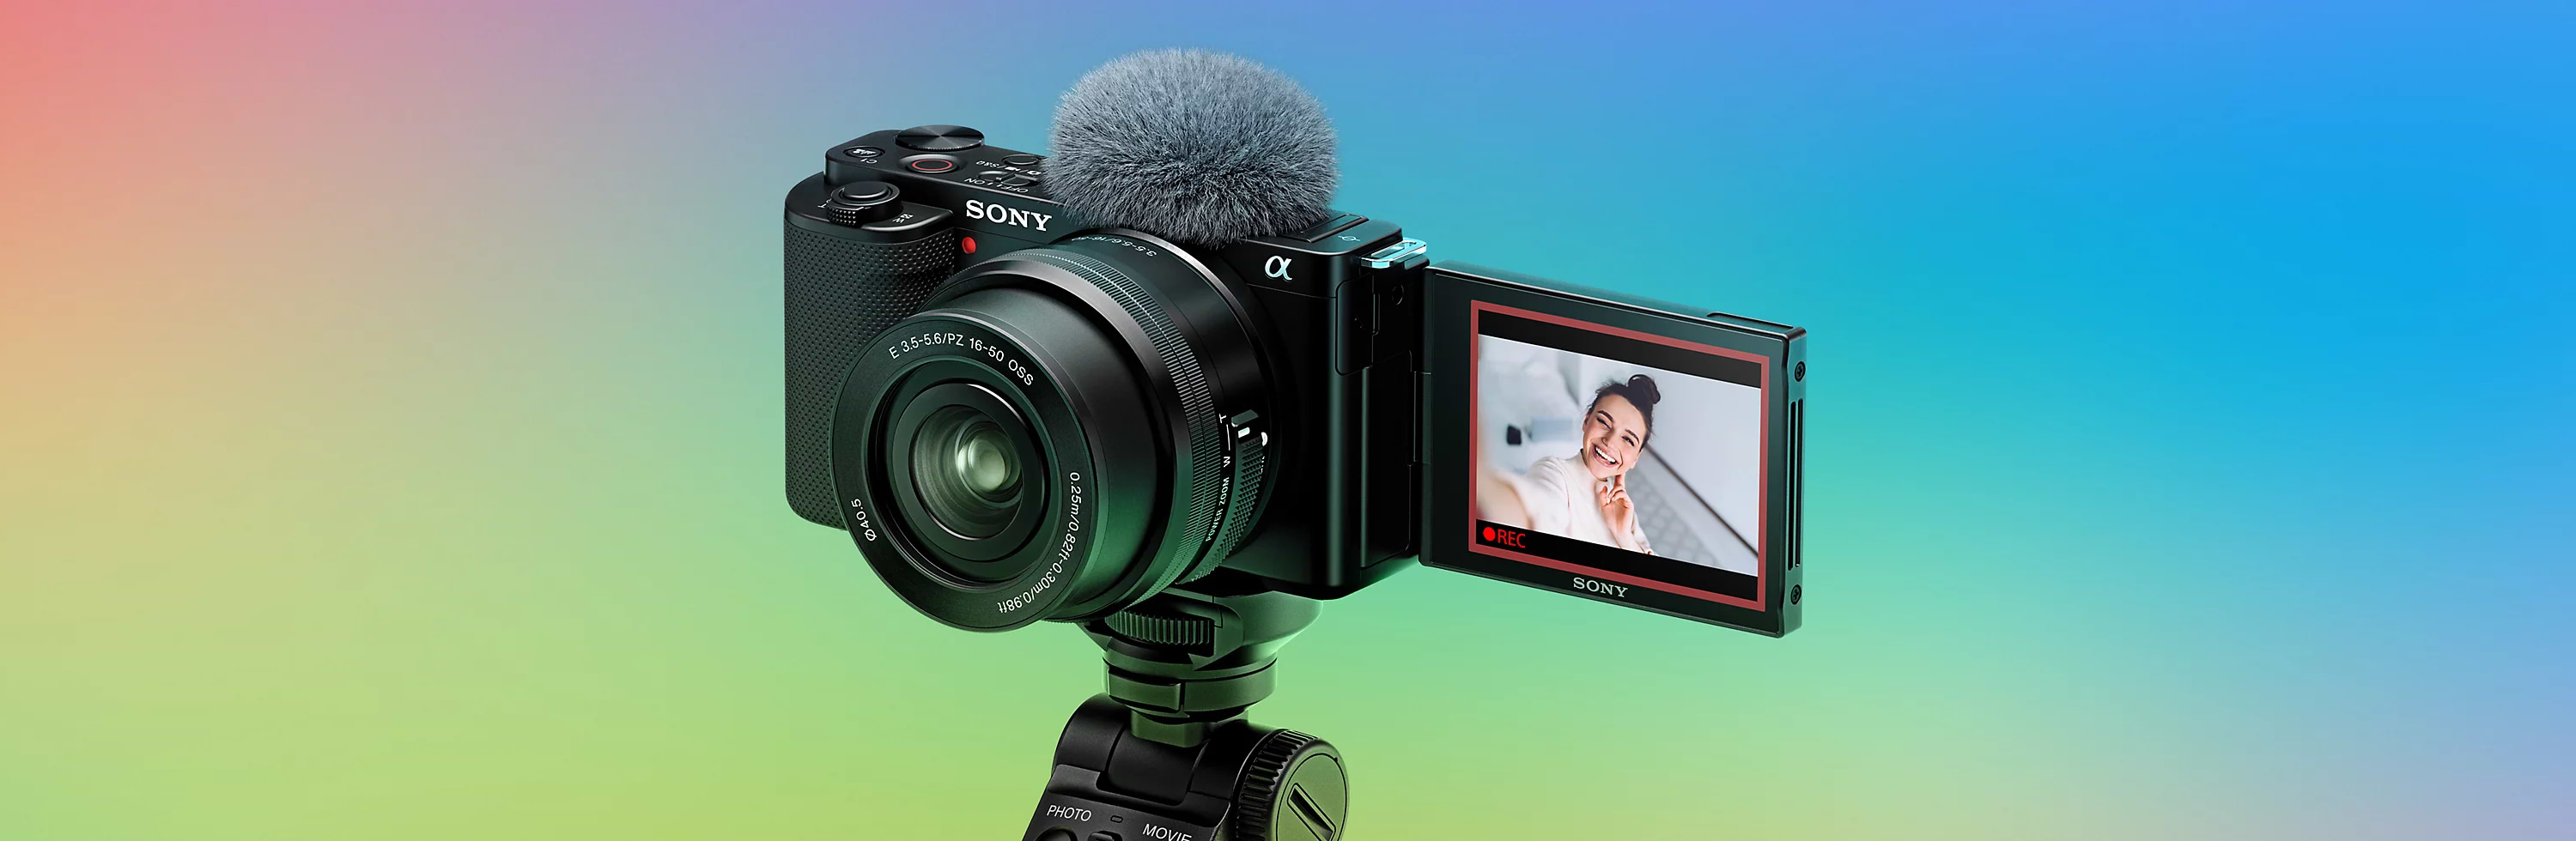 מצלמה דיגיטלית ללא מראה כולל עדשה Sony ZV-E10 E PZ 16-50mm f/3.5-5.6 OSS - צבע שחור שלוש שנות אחריות ע"י היבואן הרשמי